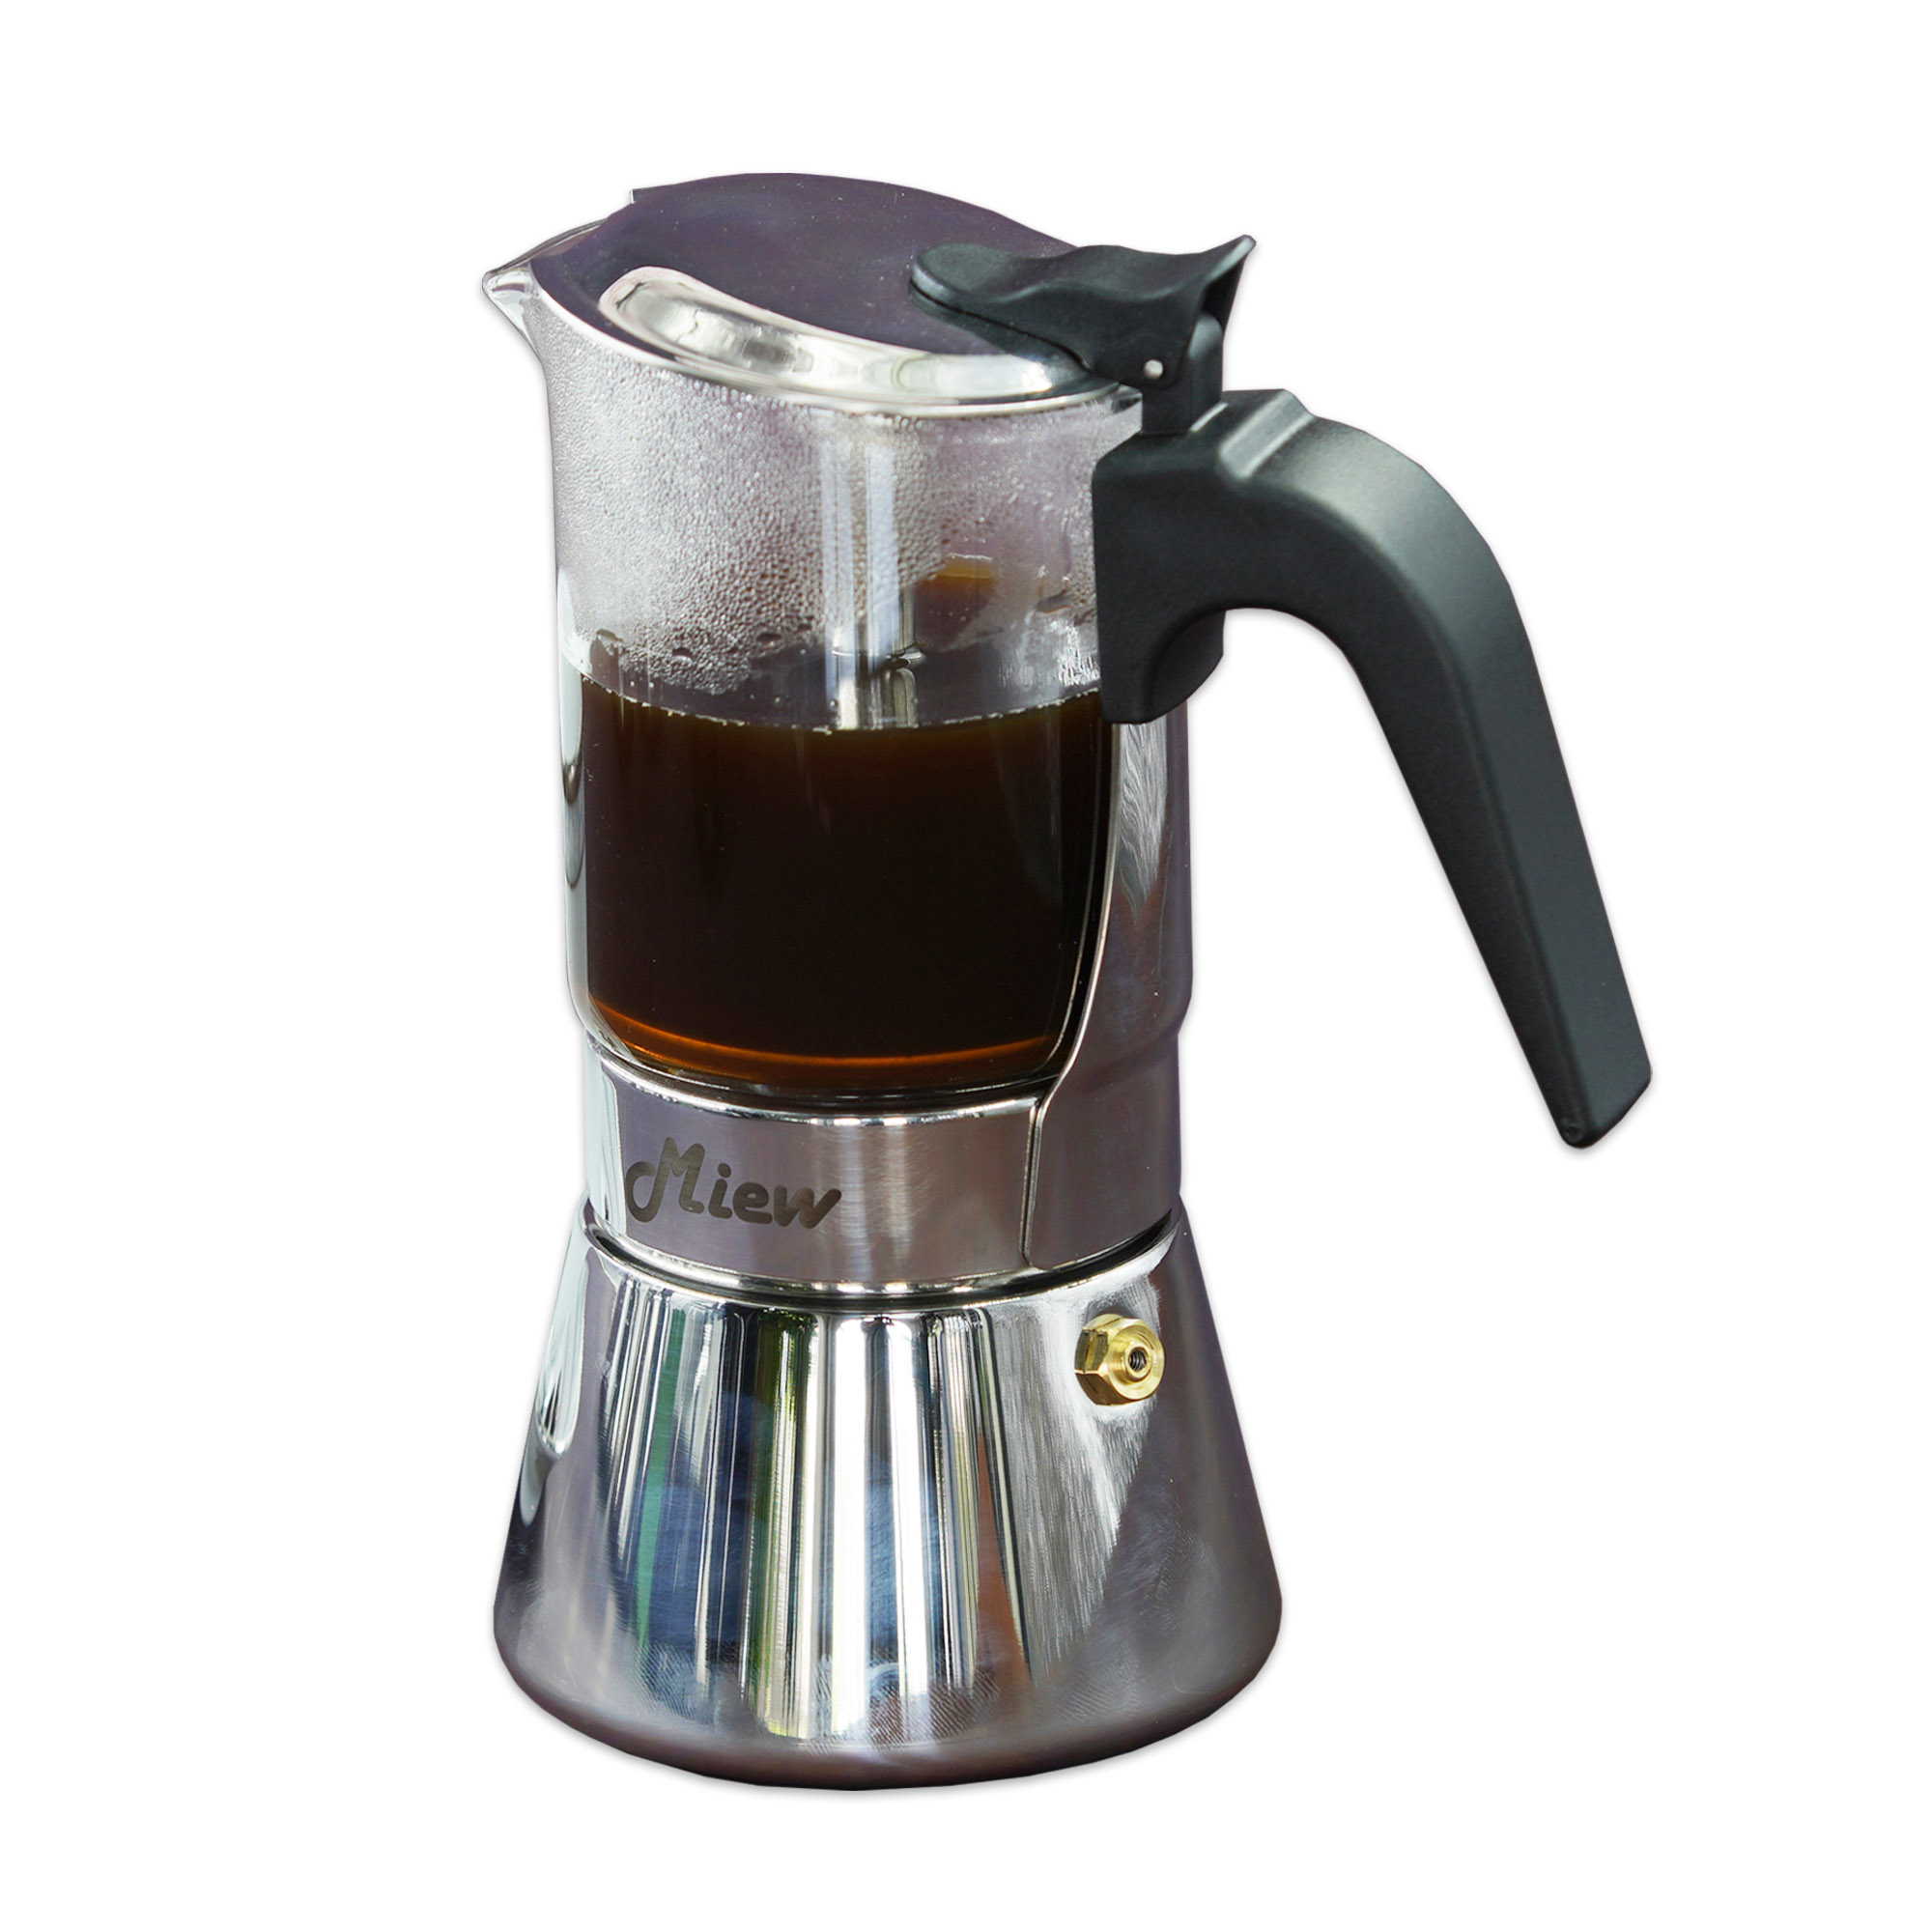 มอคค่าพอท เครื่องชงกาแฟ Miew Moka pot／Coffee Maker กาต้มกาแฟ หม้อชงกาแฟ สแตนเลสสตีล+แก้ว รุ่นAX633360